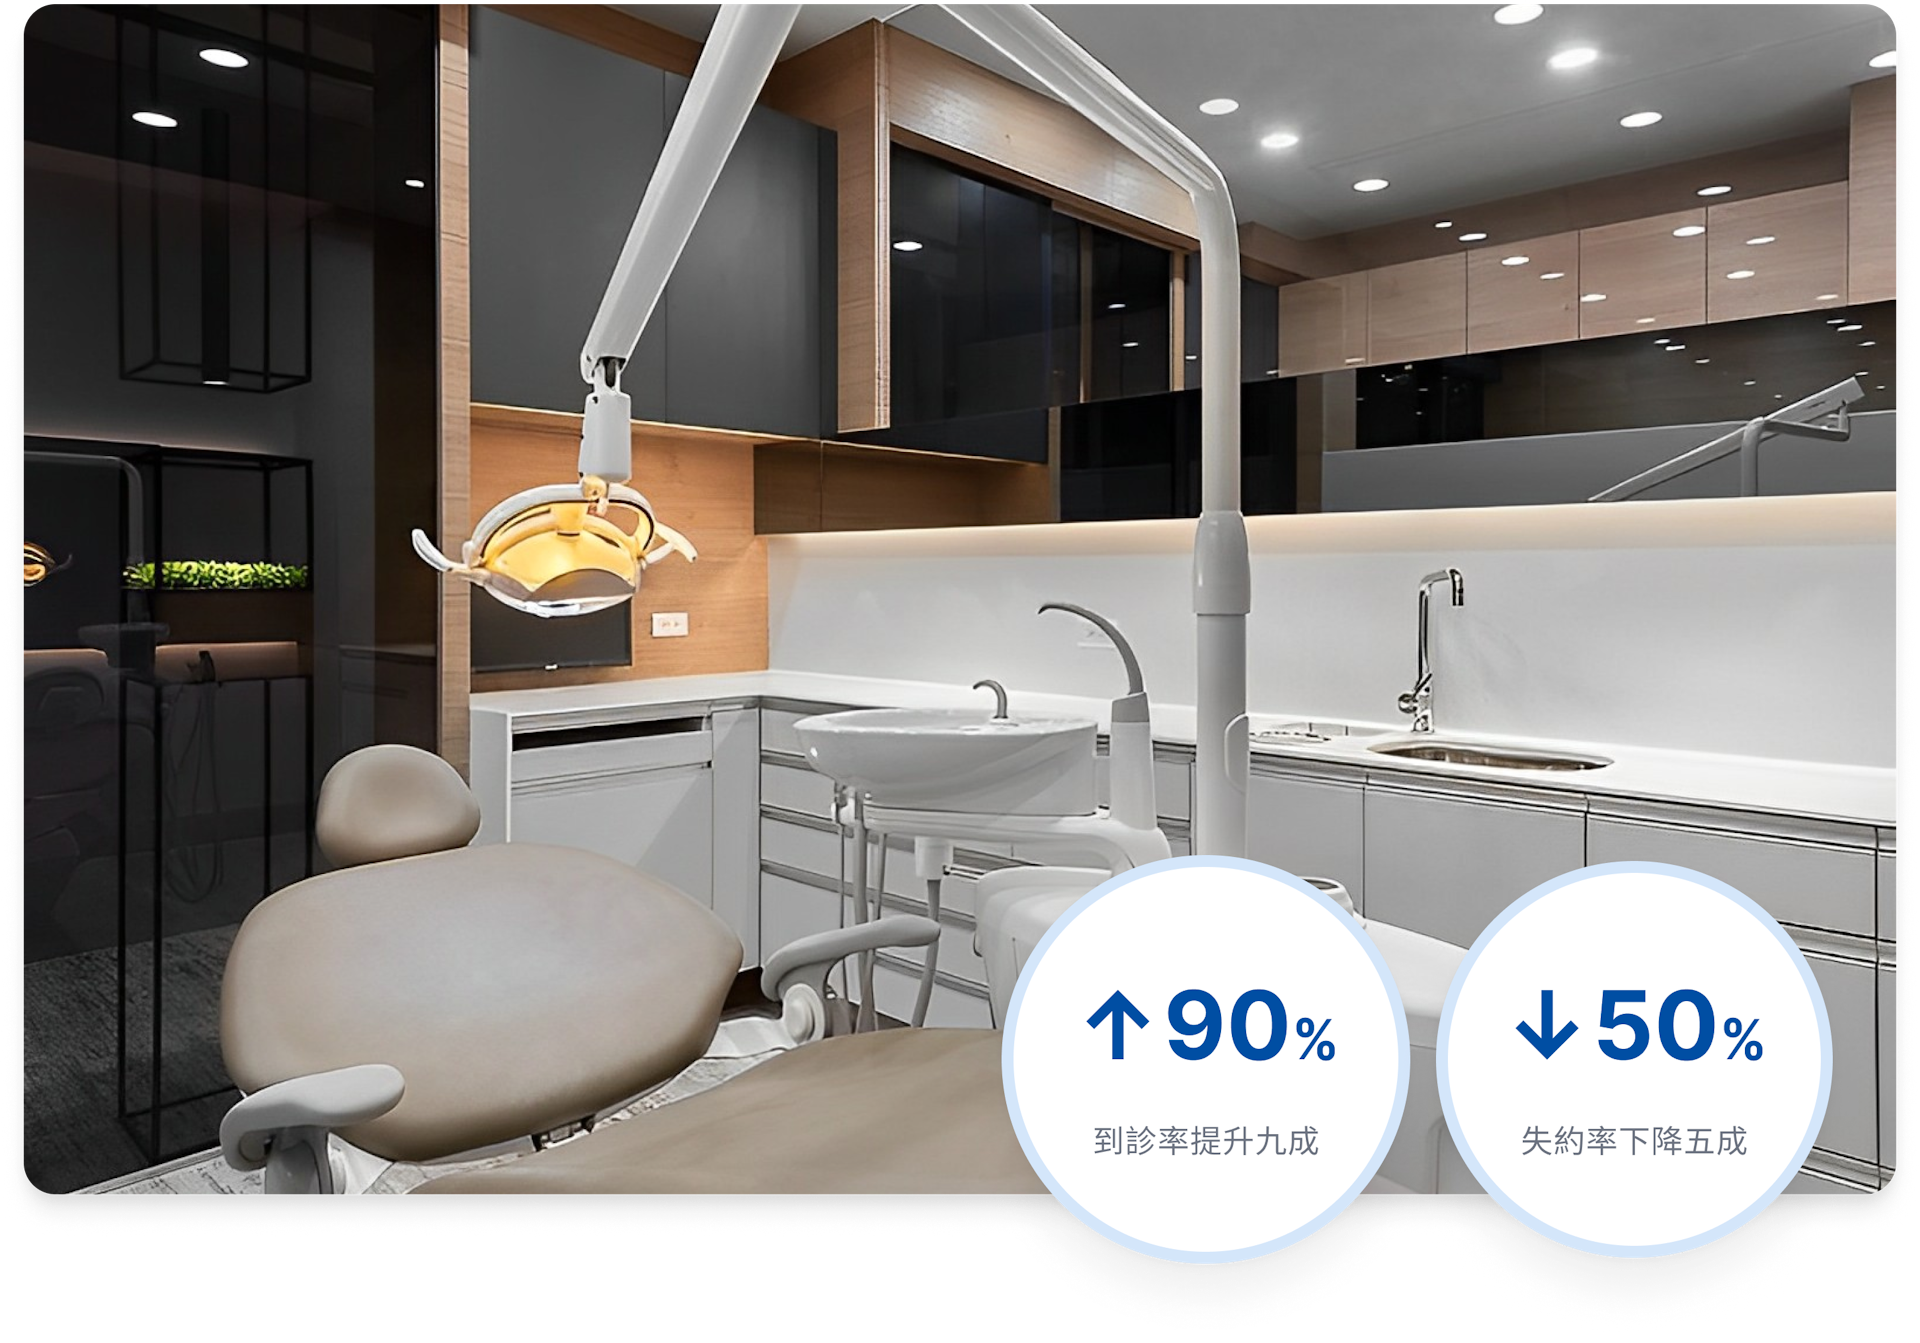 預約看牙也得跟上數位化，晶悅牙醫靠數位轉型將到診率提升至 90%！